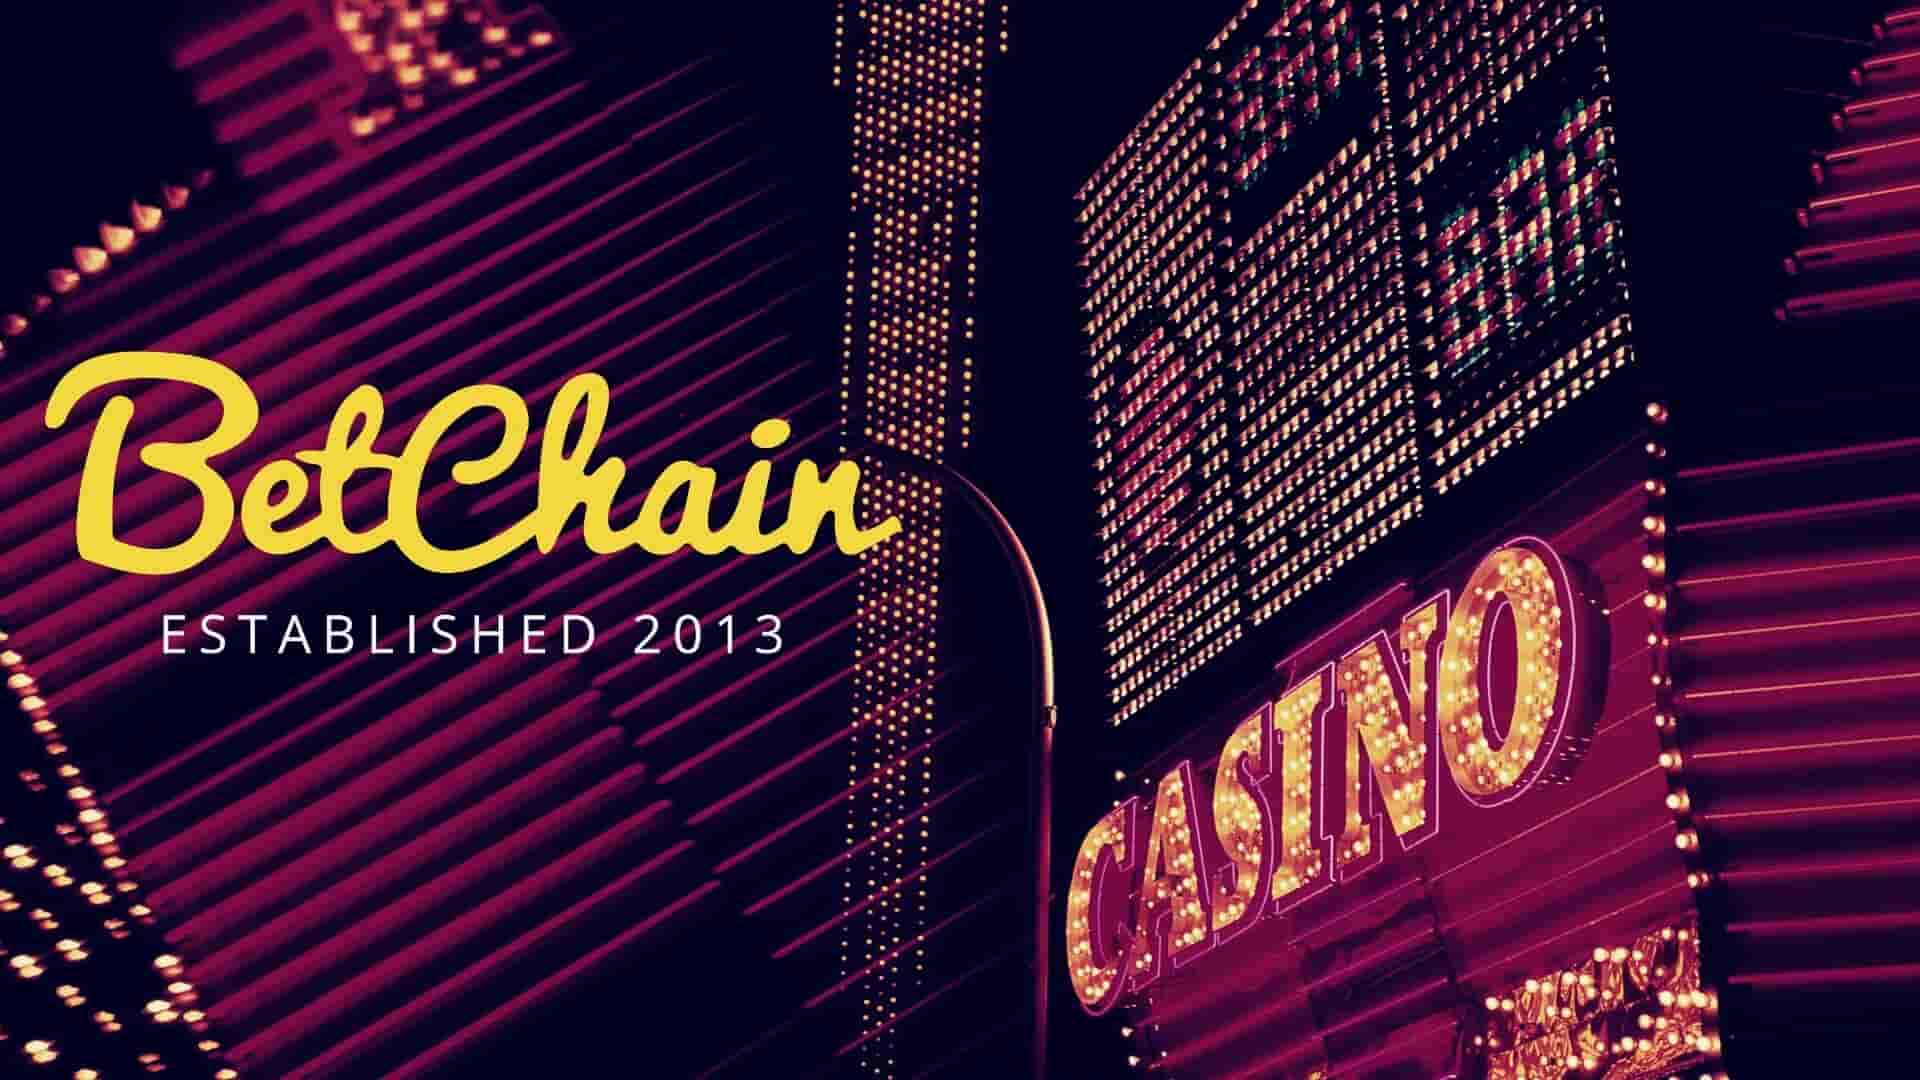 Betchain casino no deposit codes